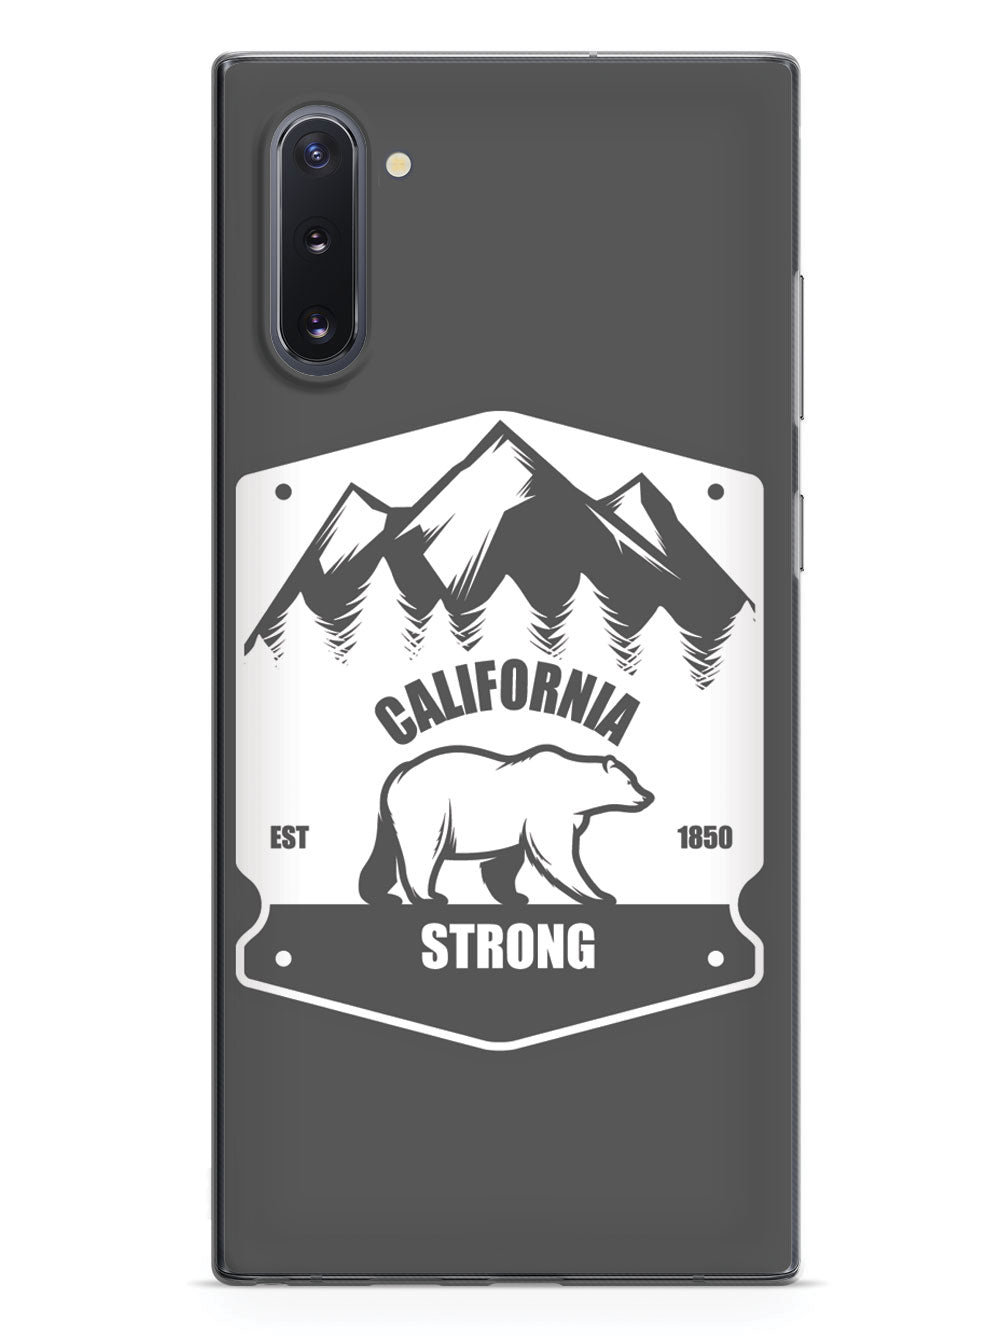 California Strong - Badge Case